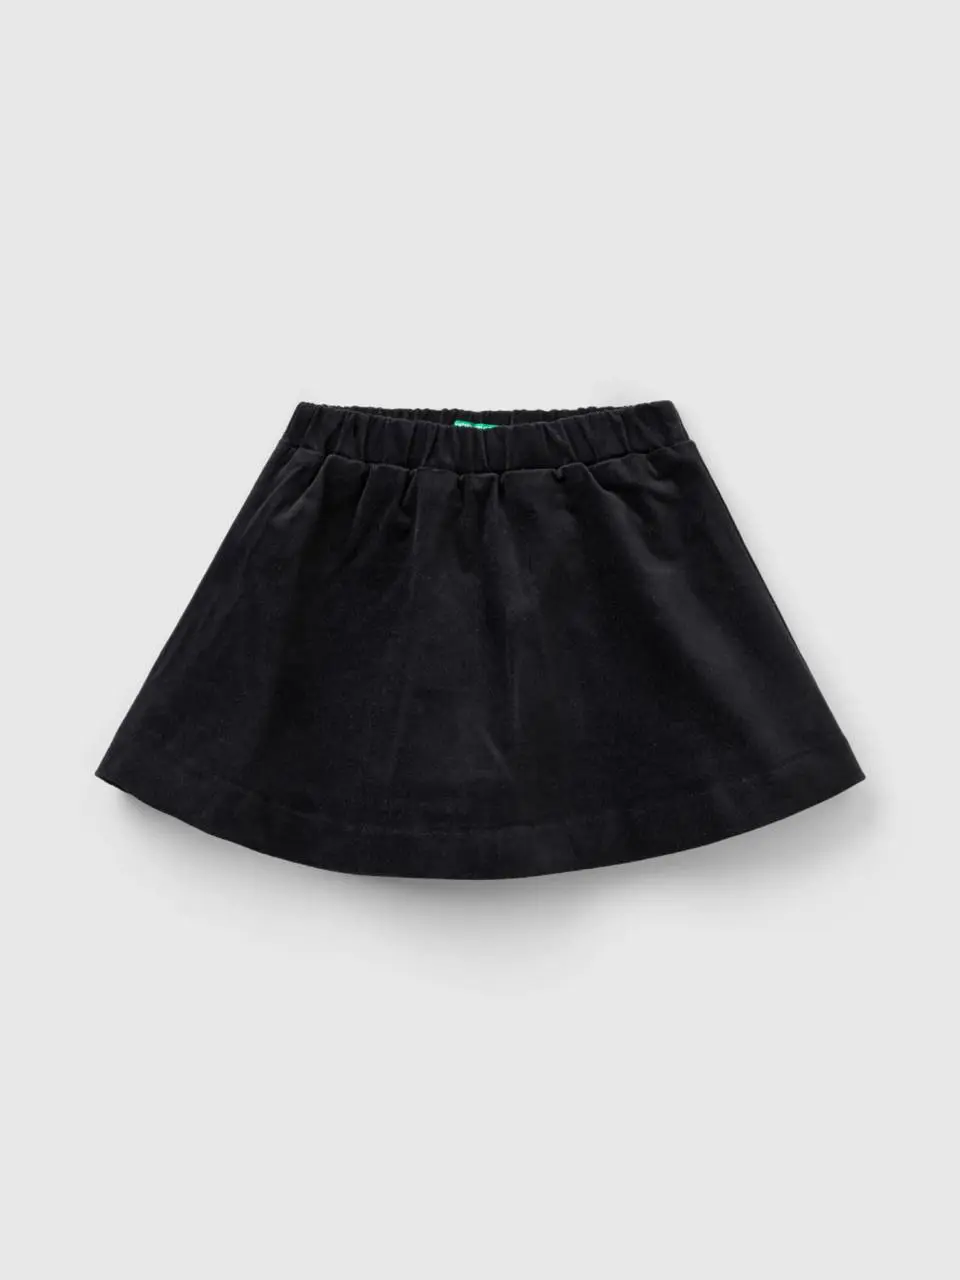 Benetton smooth velvet mini skirt. 1